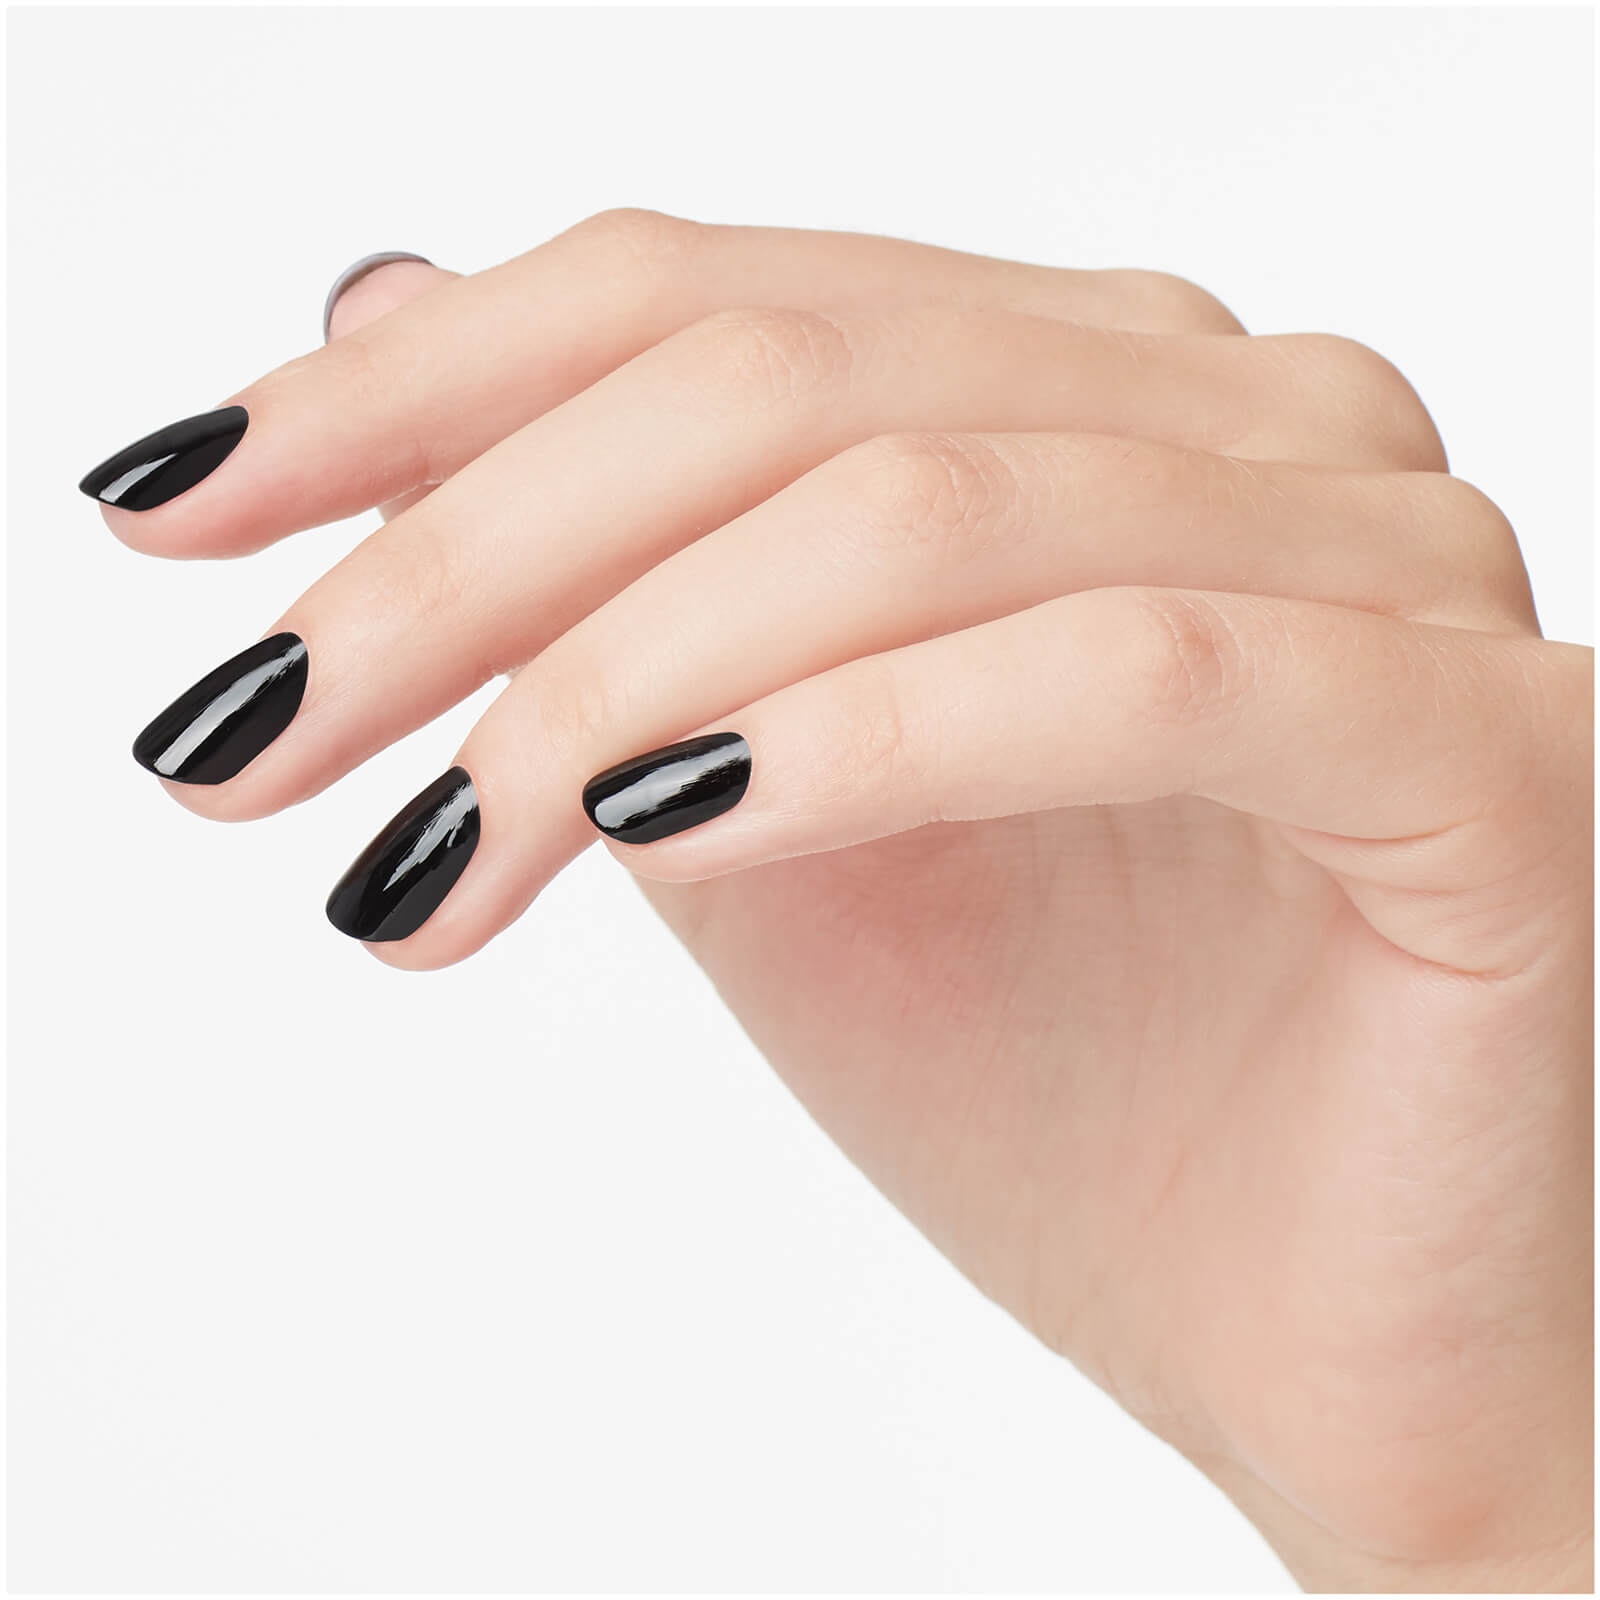 Opi Infinite Shine Long-wear Nail Polish (various Shades) - Lady In Black